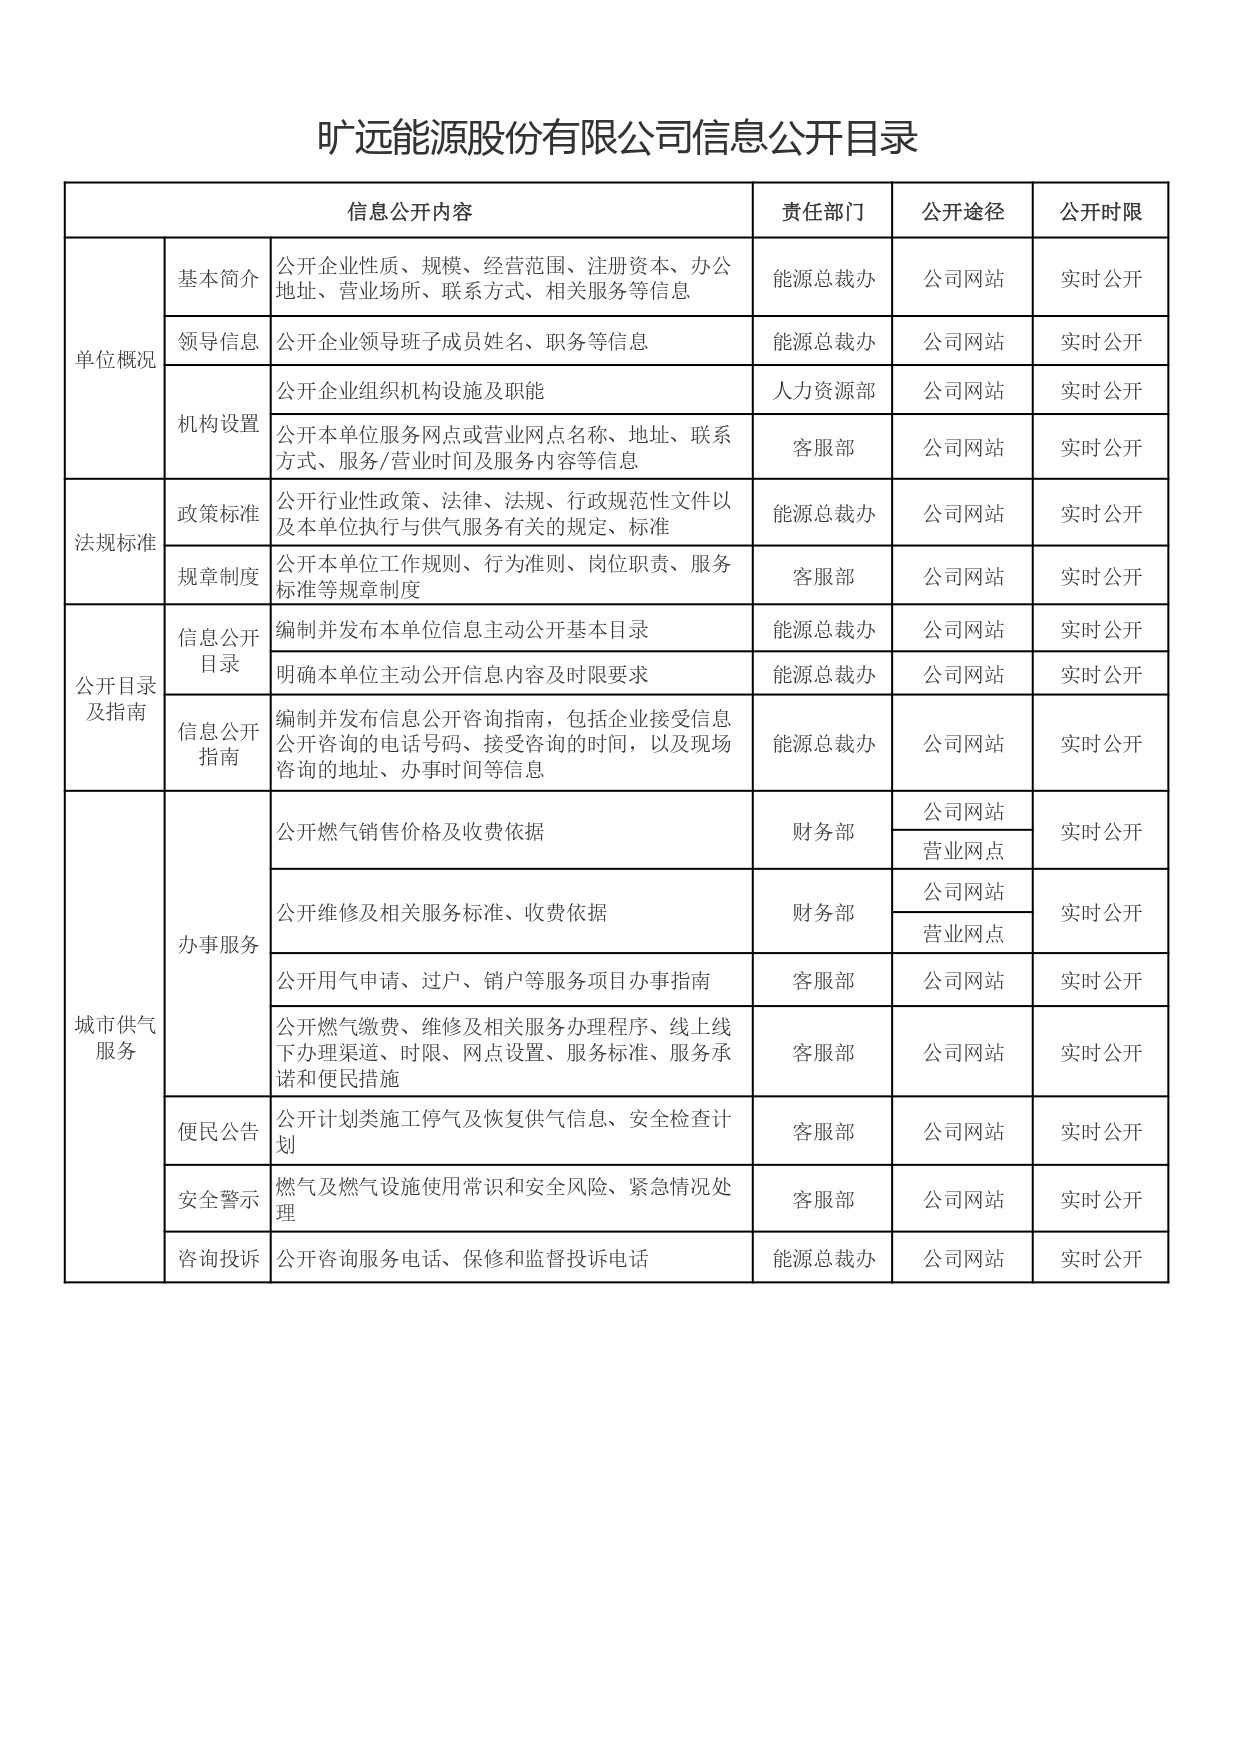 3-1kaiyun中国官方网站信息公开目录_page-0001.jpg